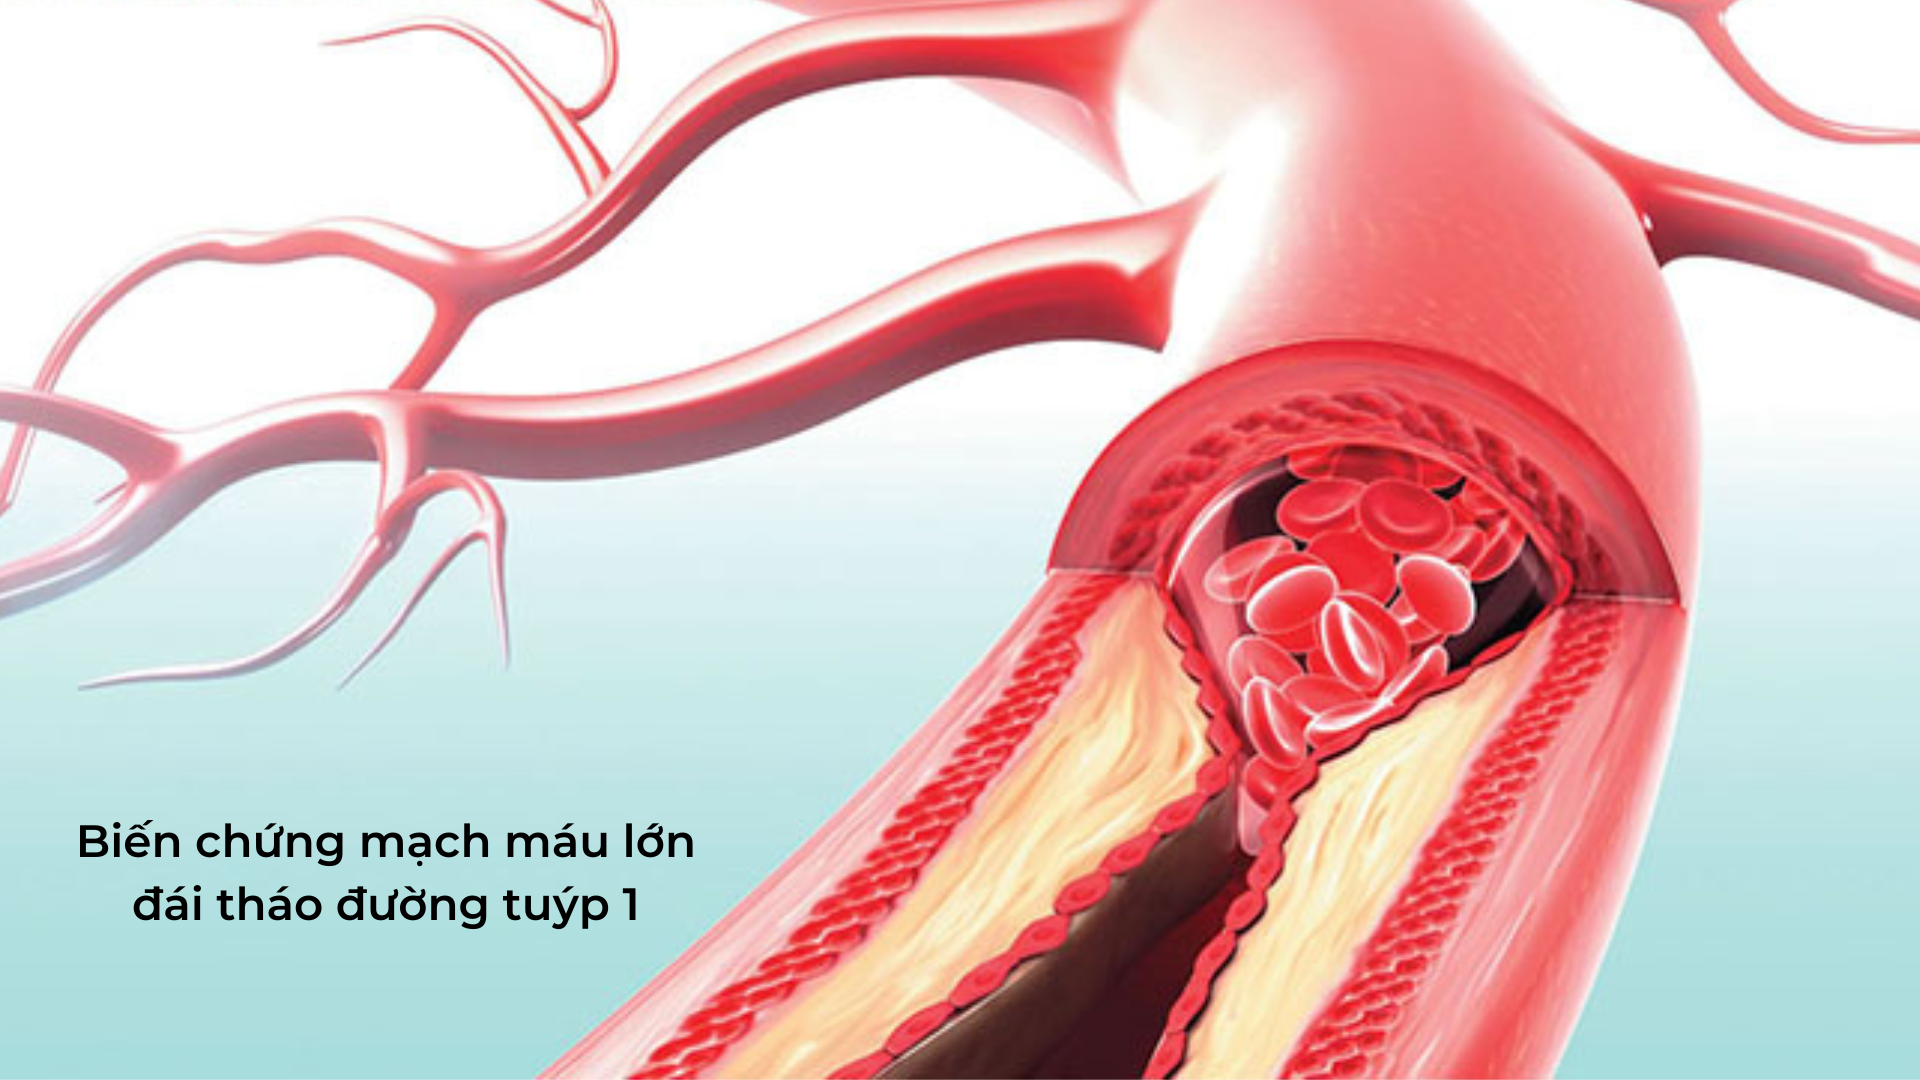 Biến chứng mạch máu lớn là biến chứng đái tháo đường tuýp 1 rất nguy hiểm